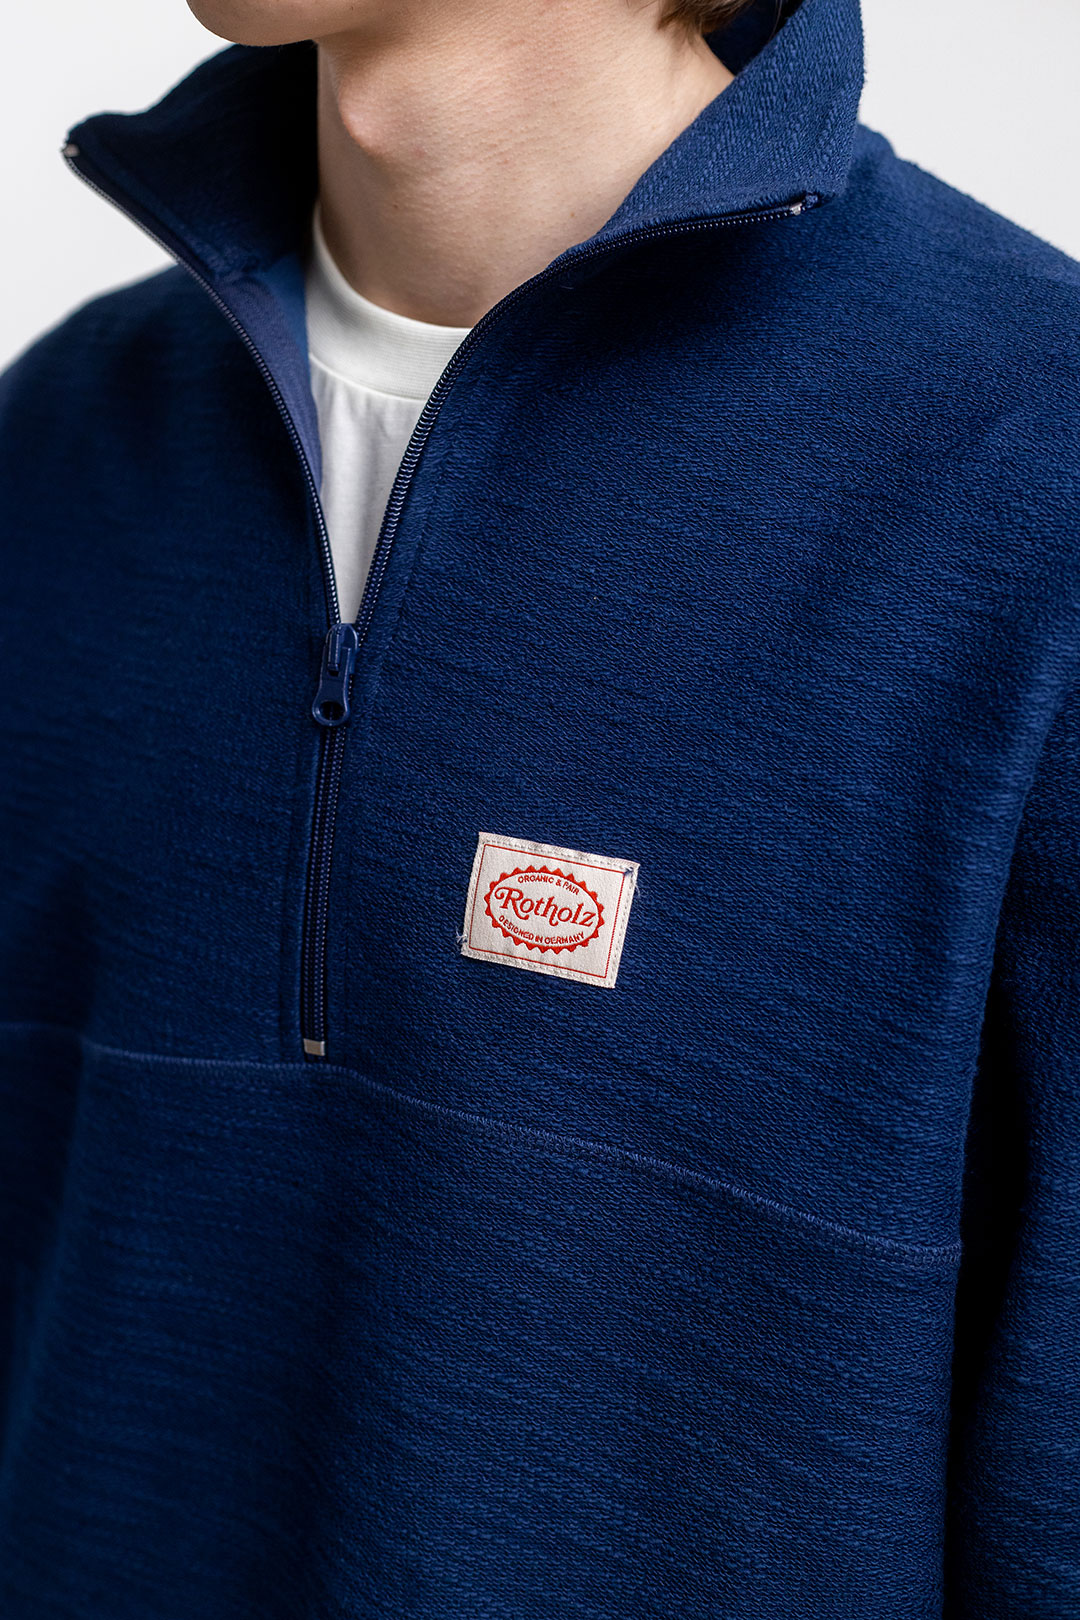 Dunkel-blaues Reissverschluss-Sweatshirt Divided 100% Baumwolle von Rotholz